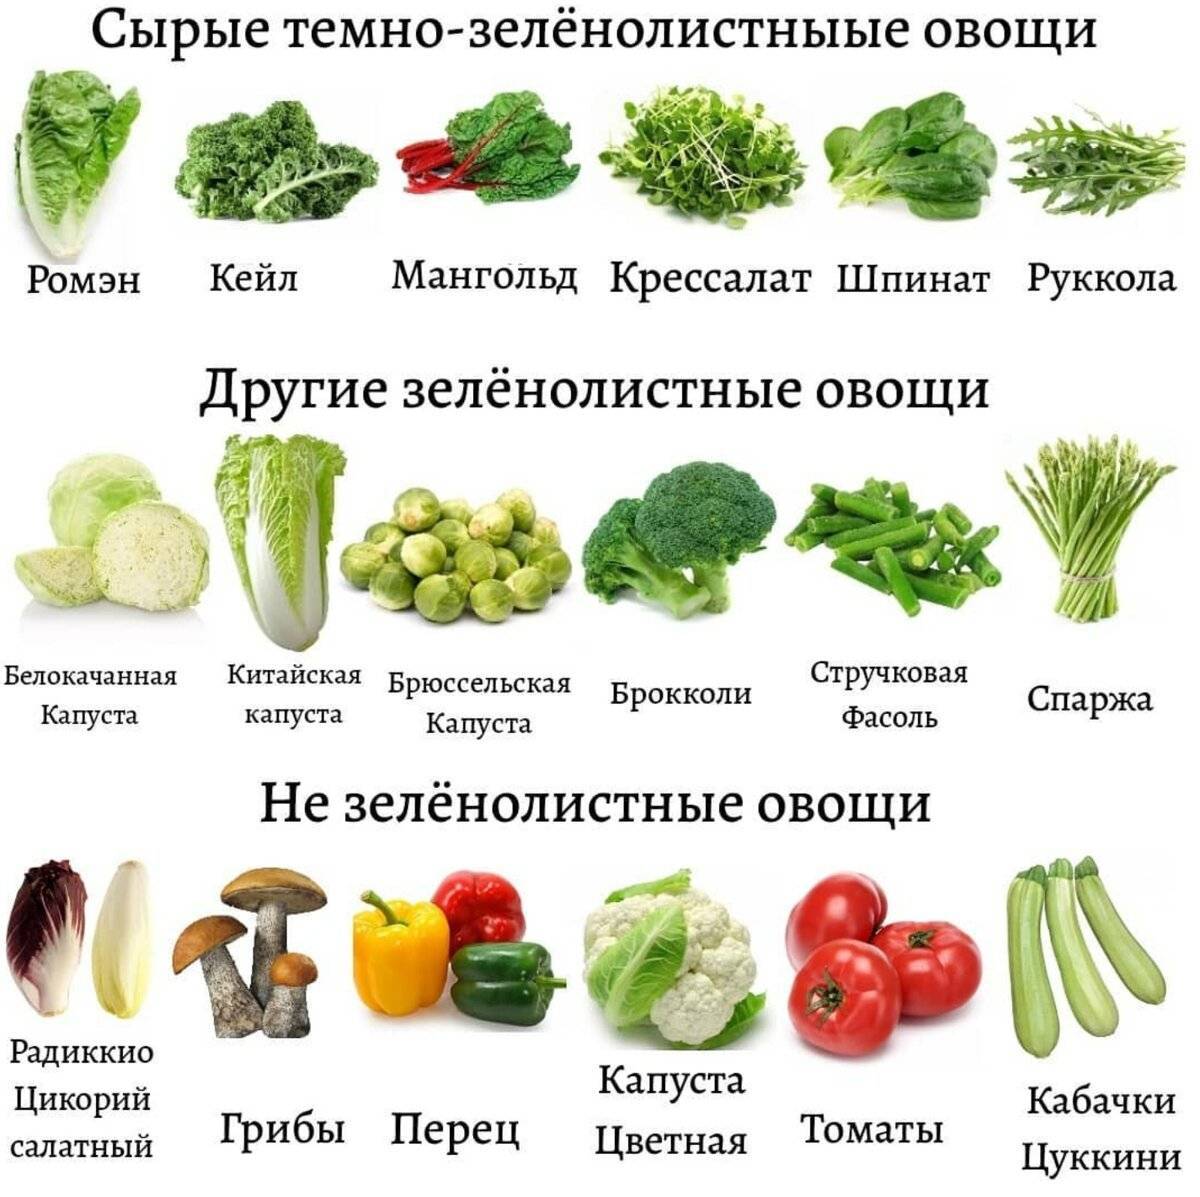 Вареные овощи для похудения – диета на отварных